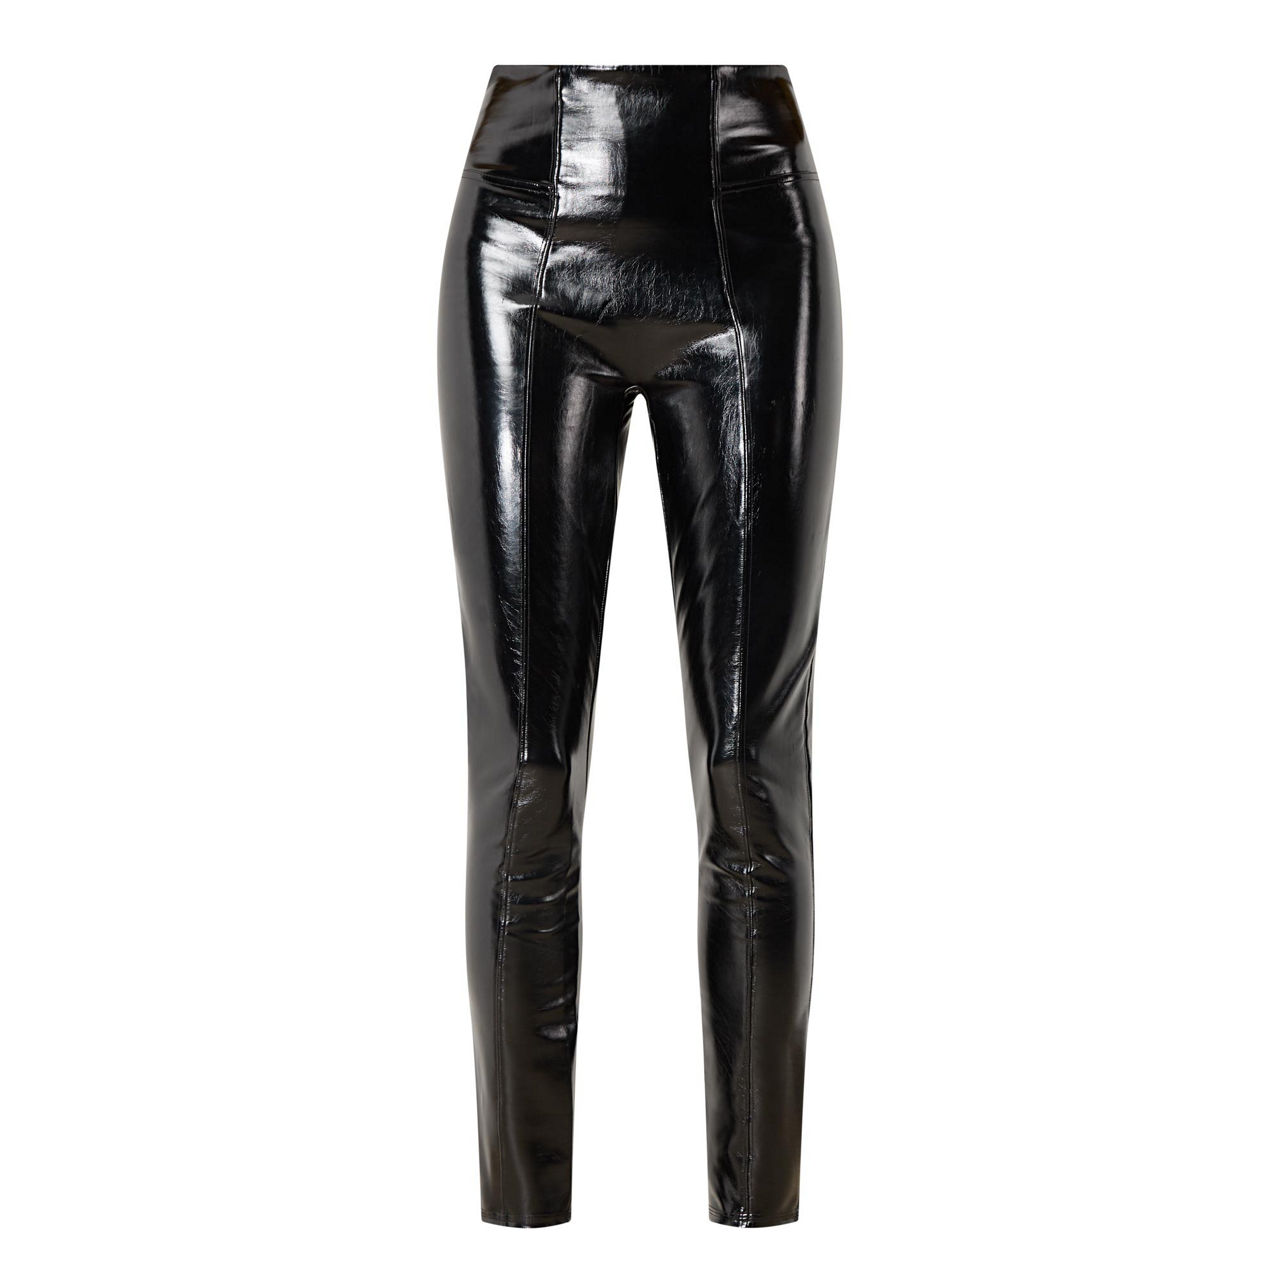 Spanx ankle grazer jean-ish leggings in black